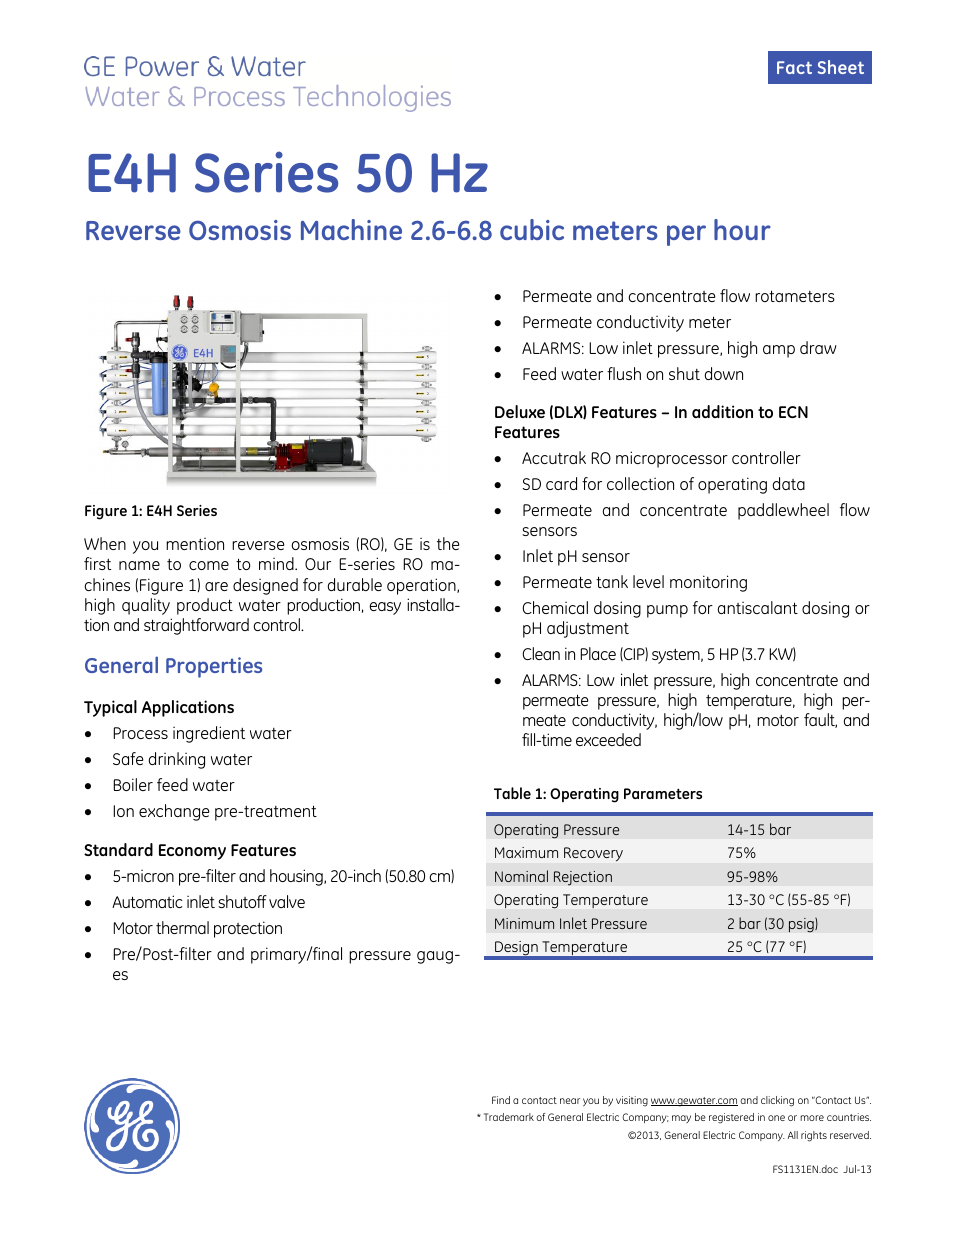 E-Series Reverse Osmosis - E4H 50 Hz